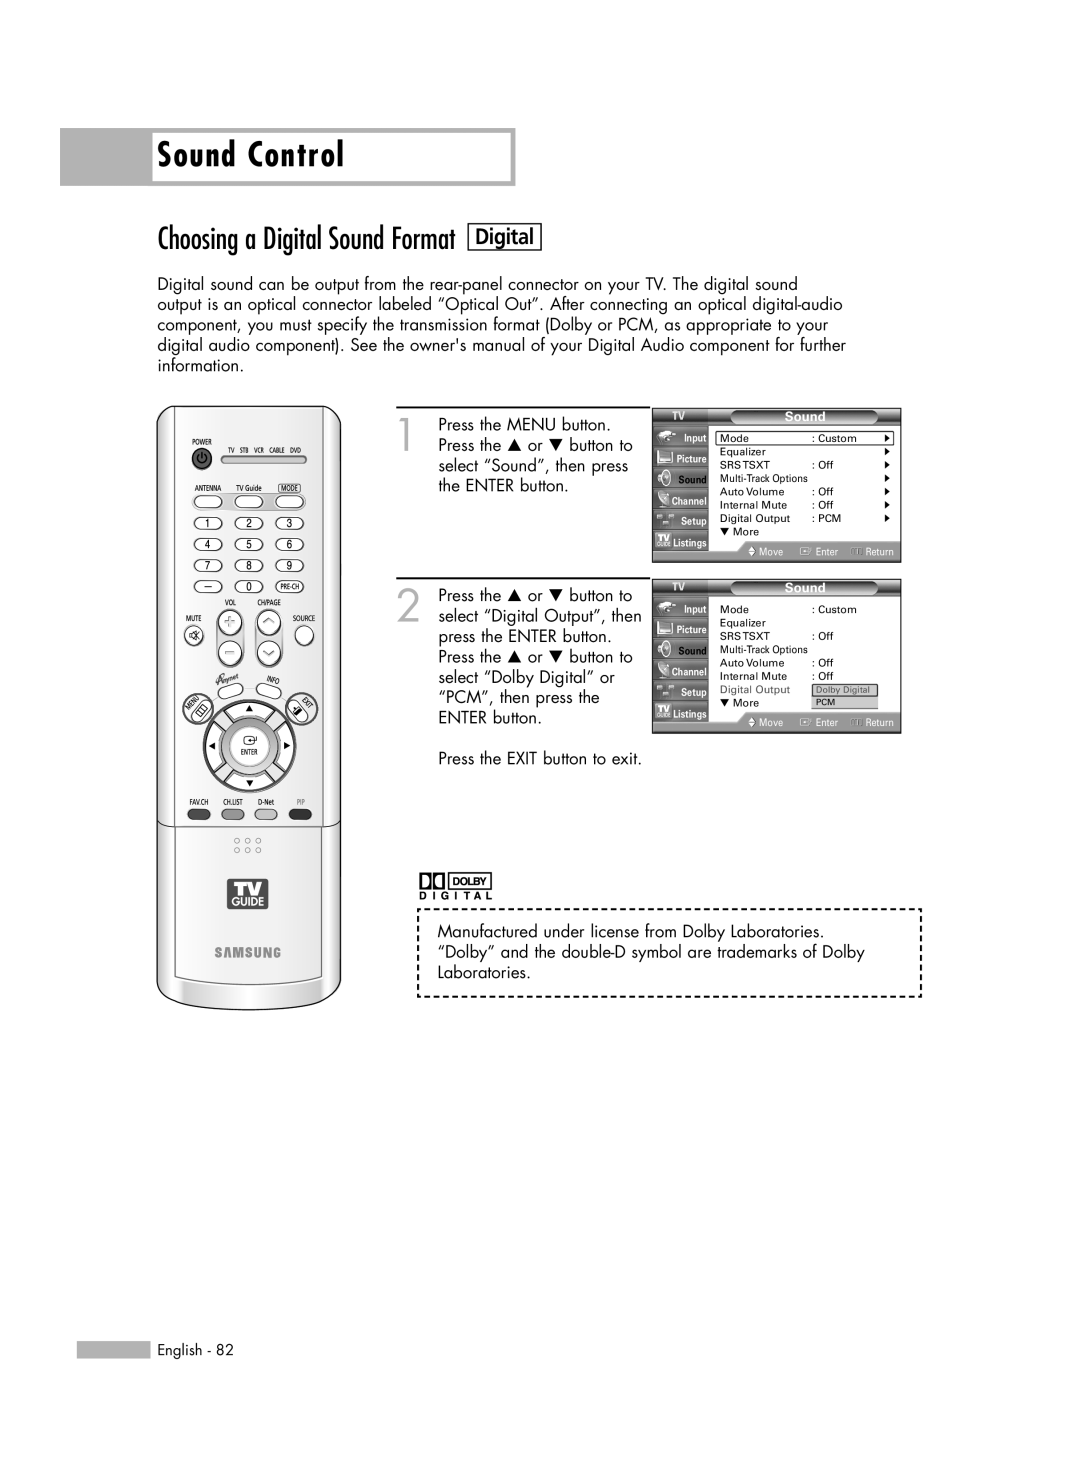 Samsung HL-R5678W, HL-R6178W, HL-R7178W manual Sound Control, Choosing a Digital Sound Format 